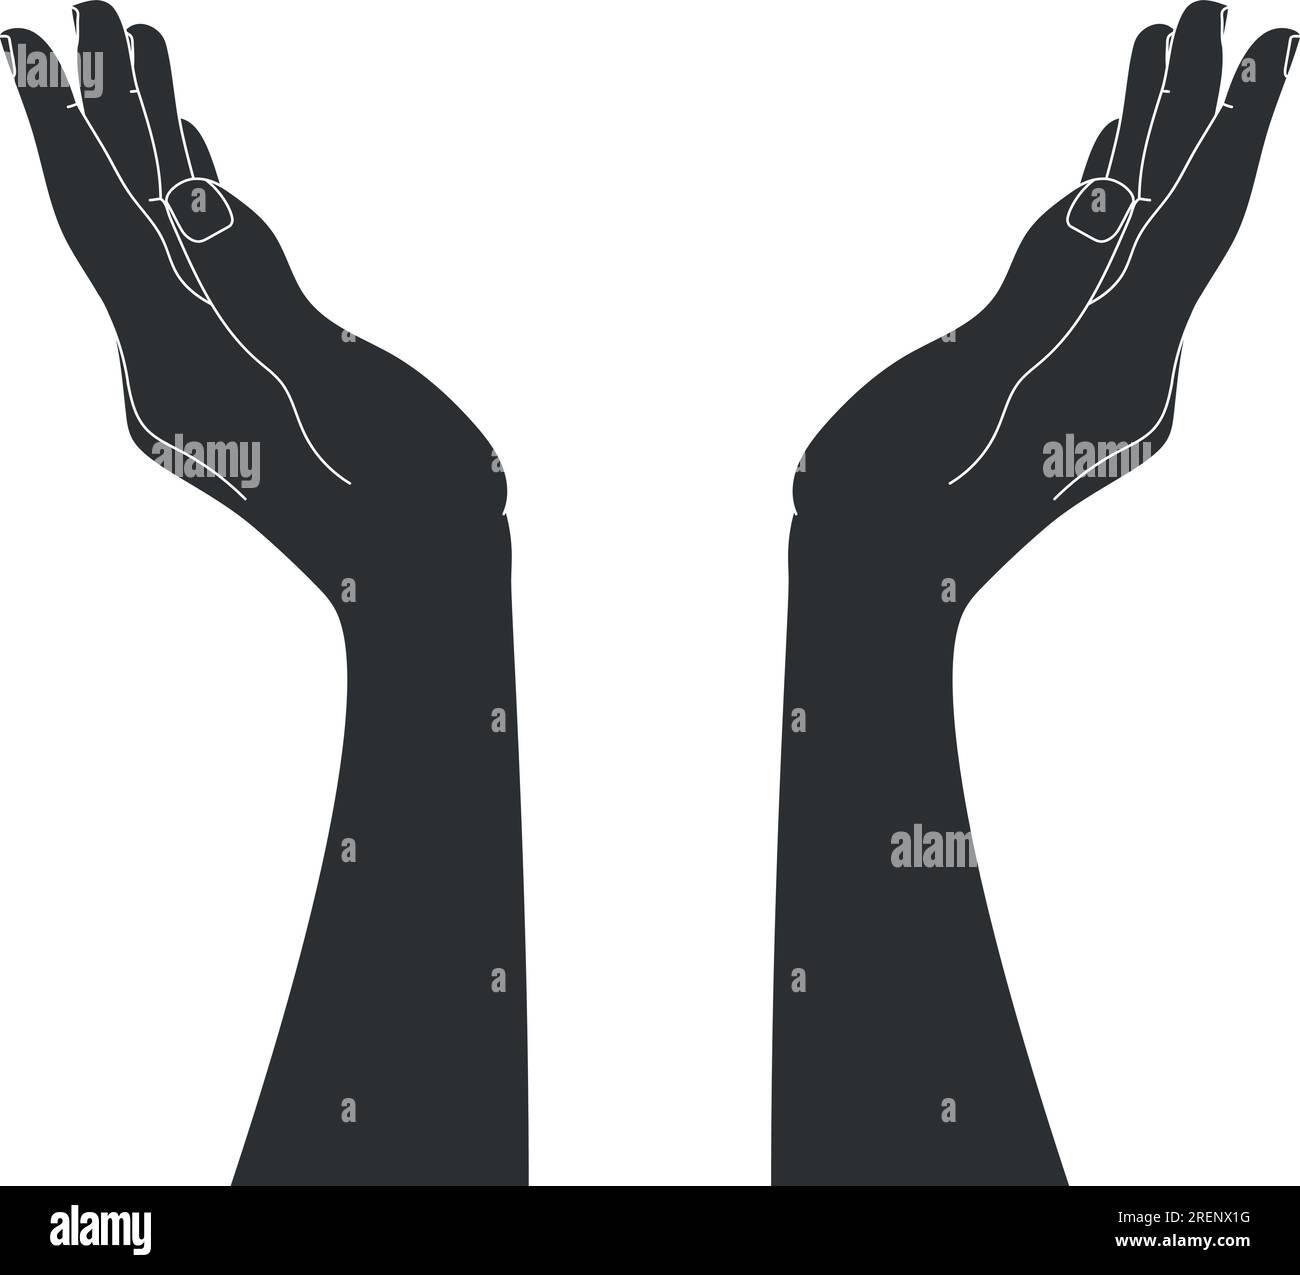 Silhouette de mains en forme de coupelle dessinée à la main isolée sur fond blanc. Contour des mains levées. Illustration vectorielle Illustration de Vecteur